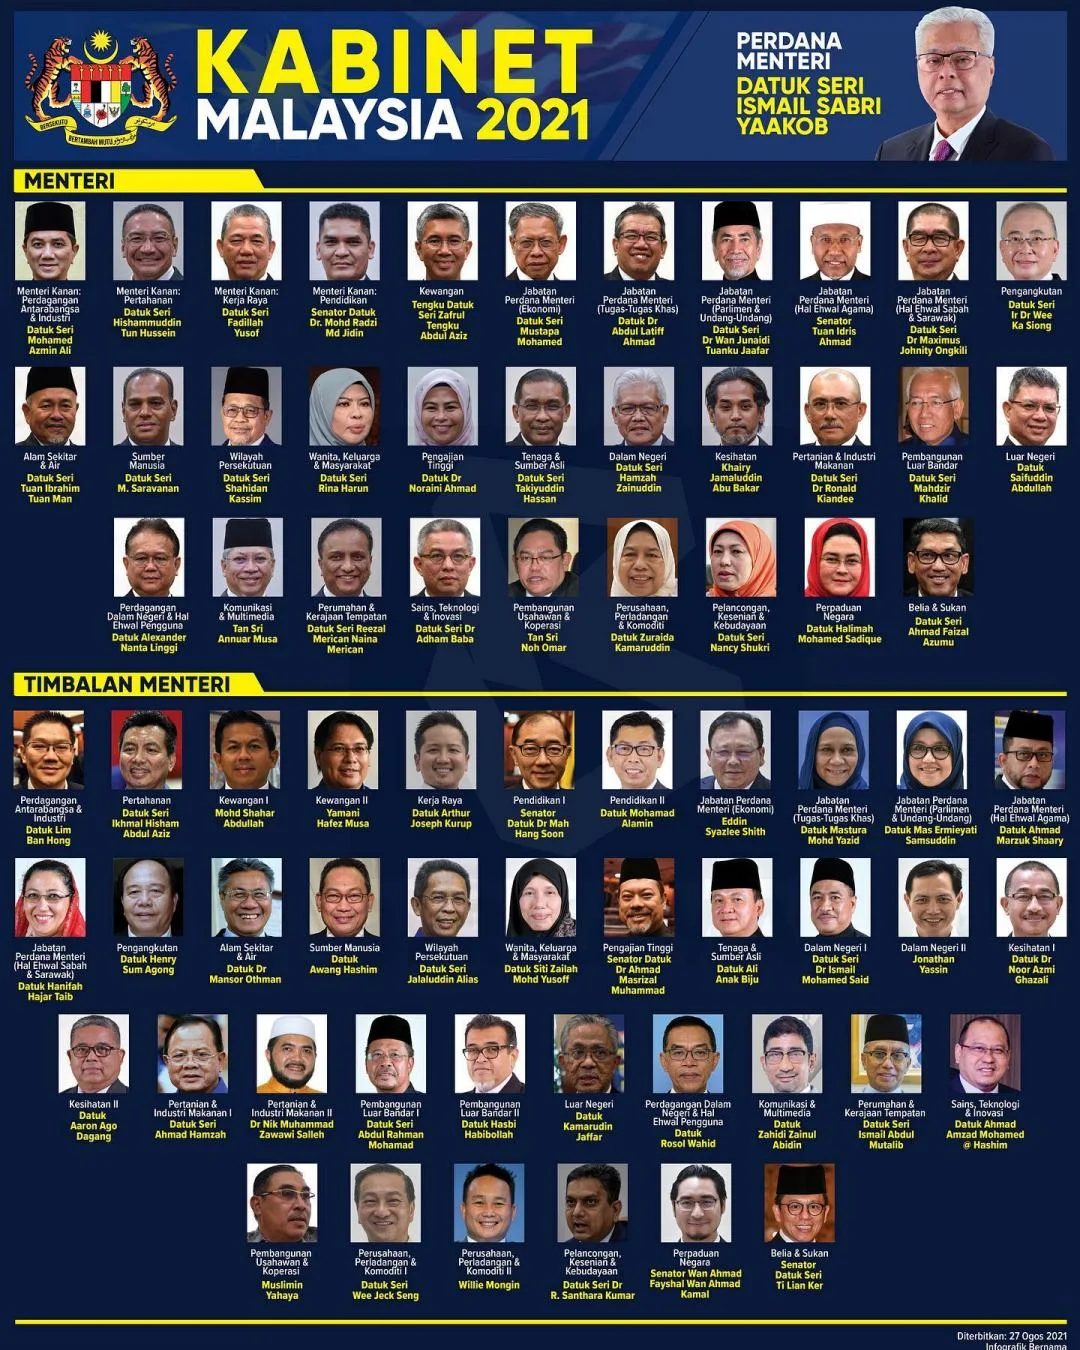 Senarai penuh barisan menteri kabinet dan timbalan menteri Malaysia baru 2021